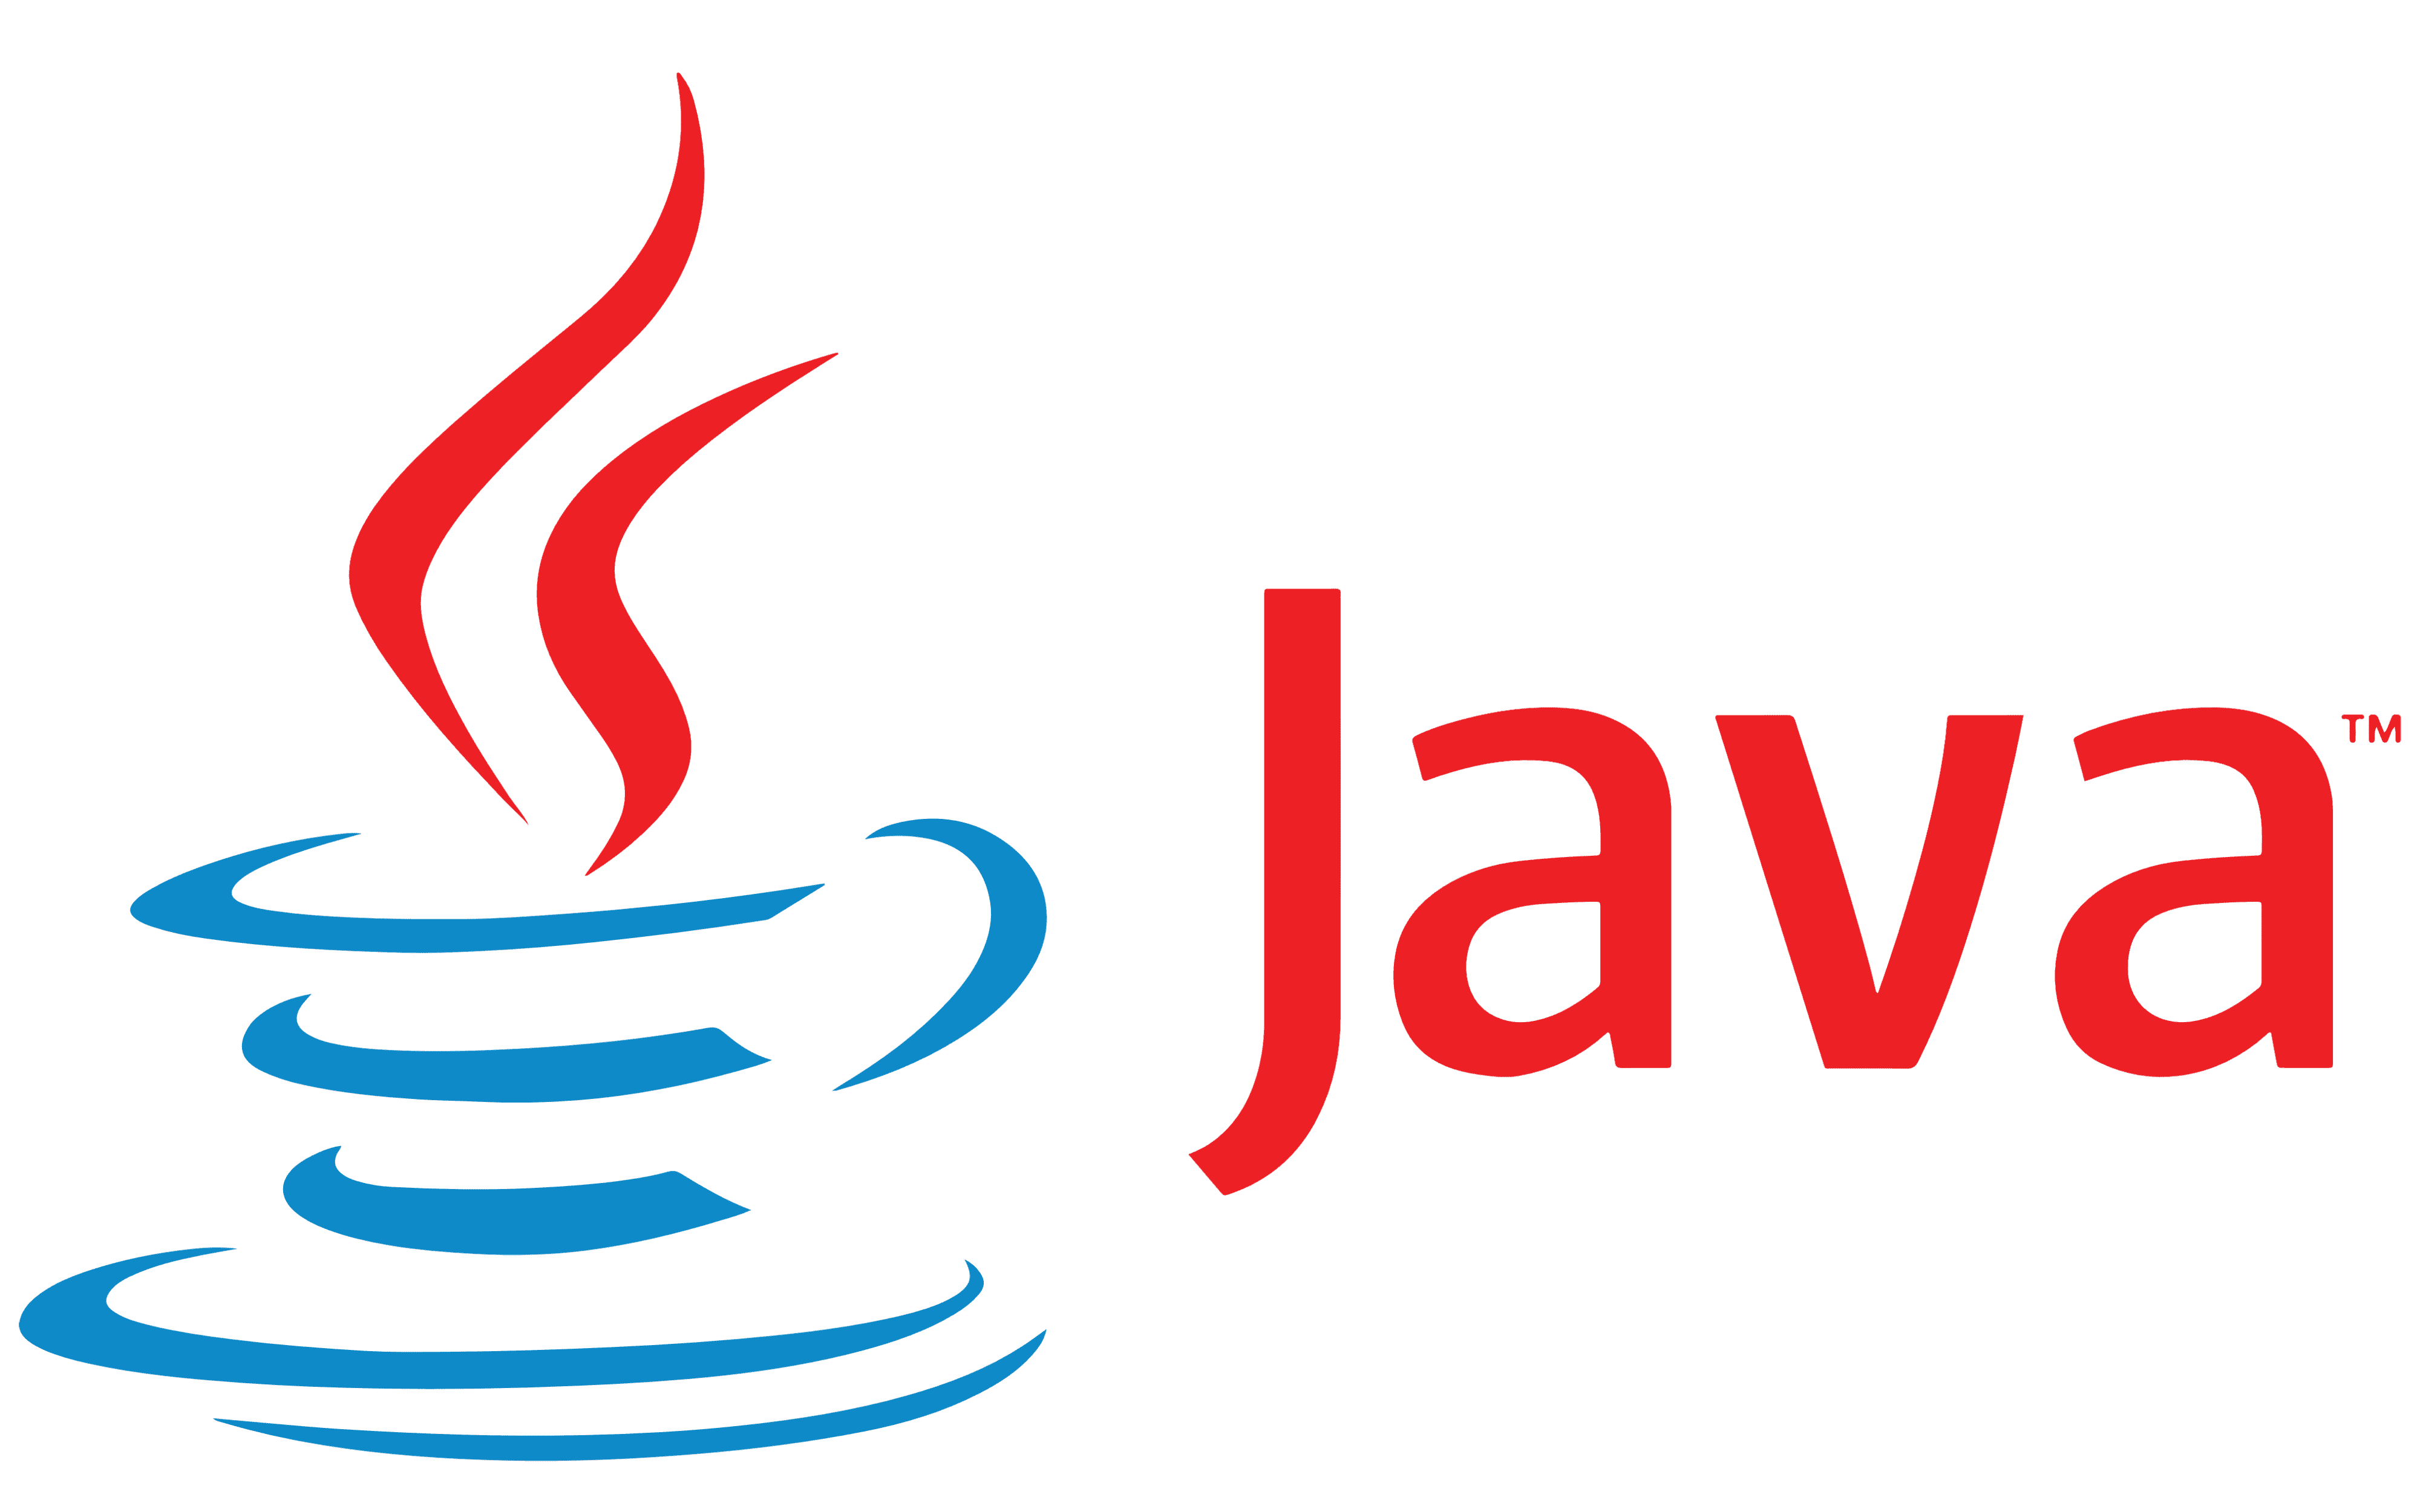 Java-logo